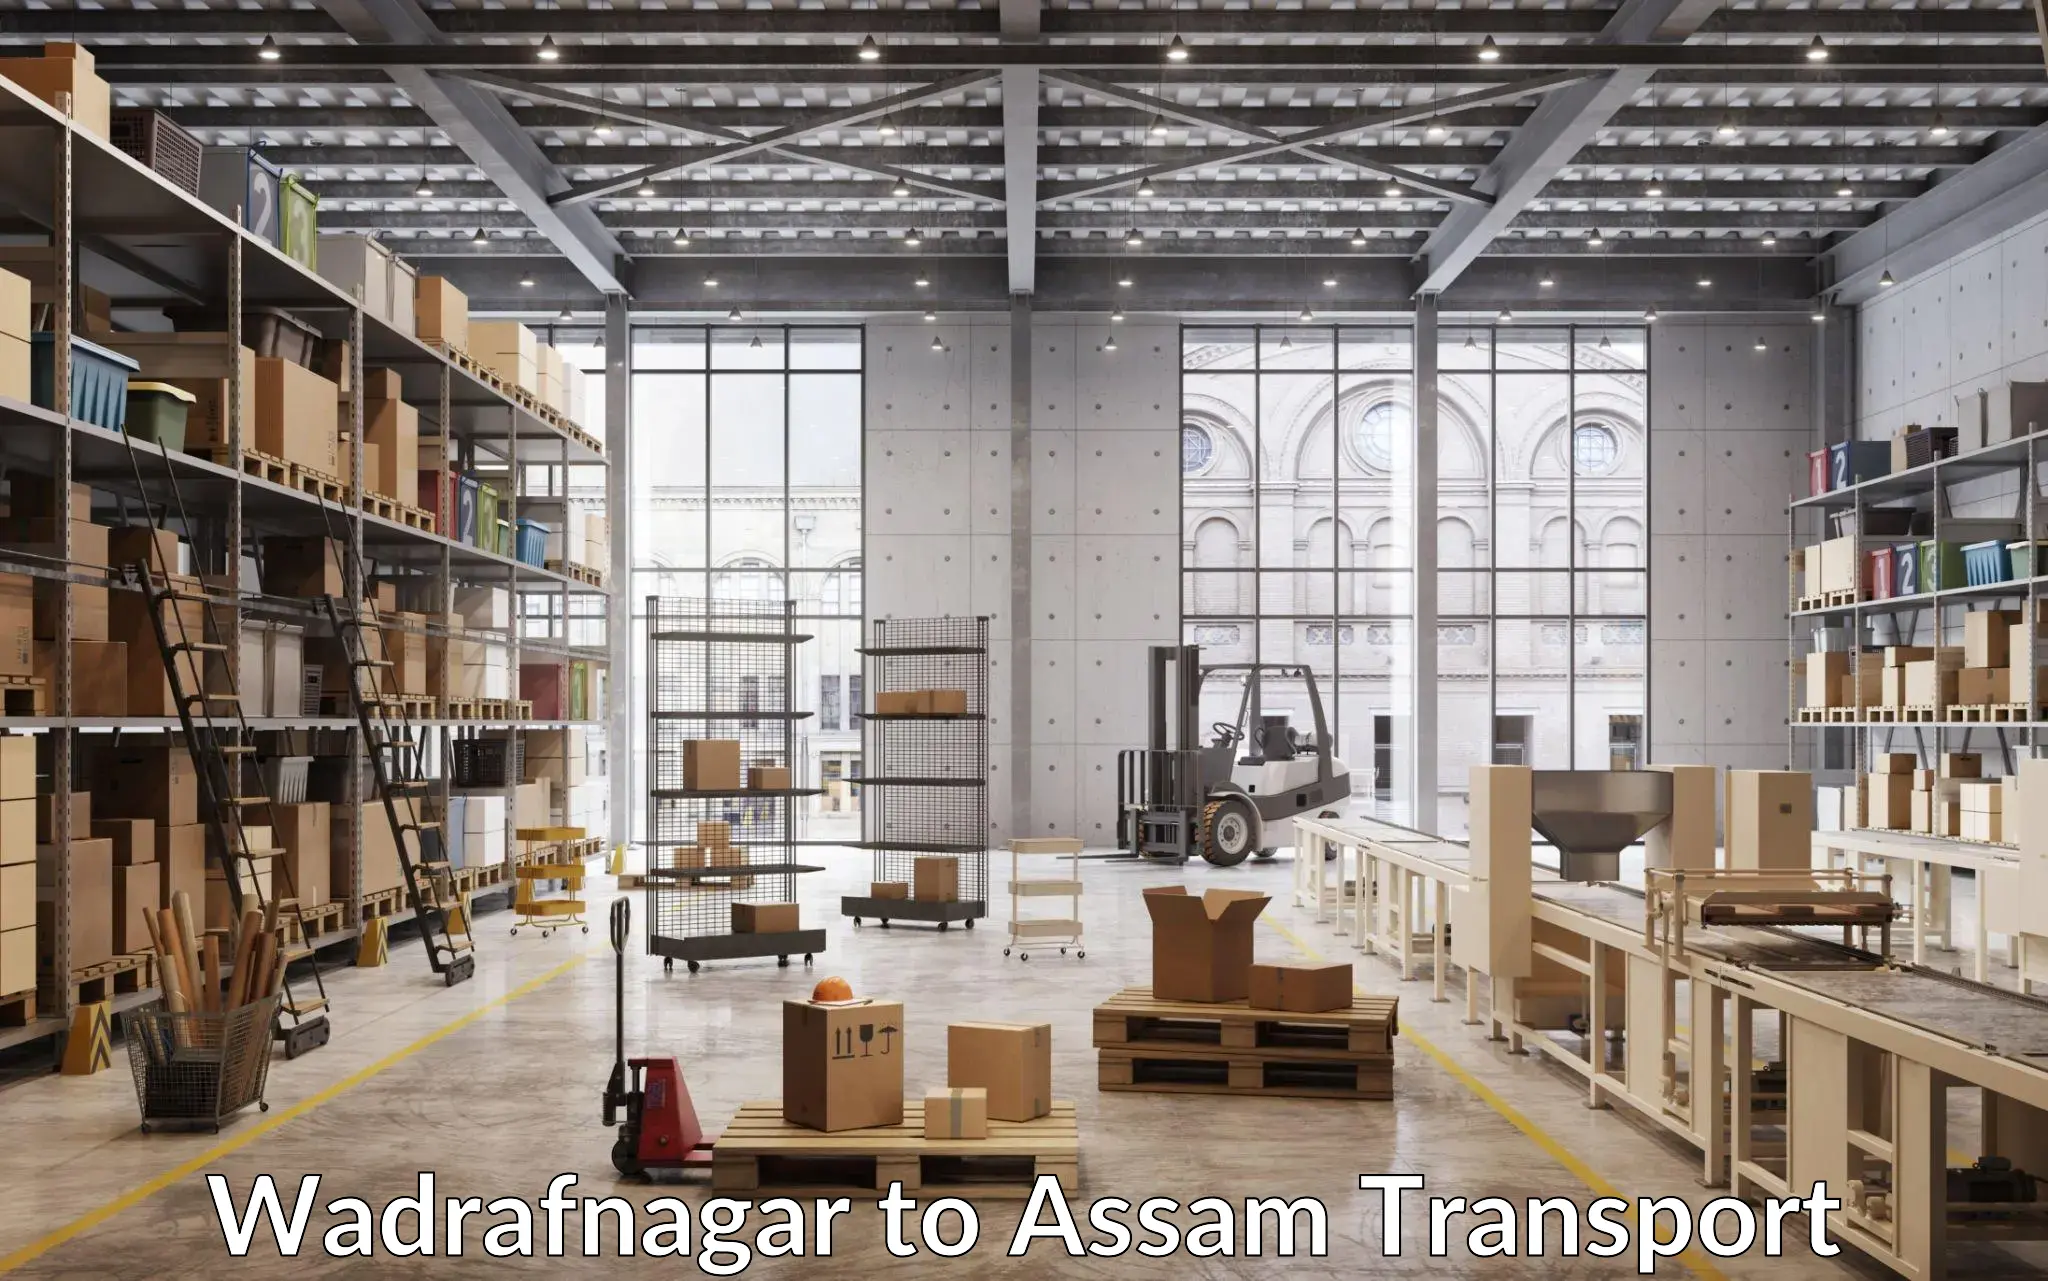 Furniture transport service Wadrafnagar to Balapara